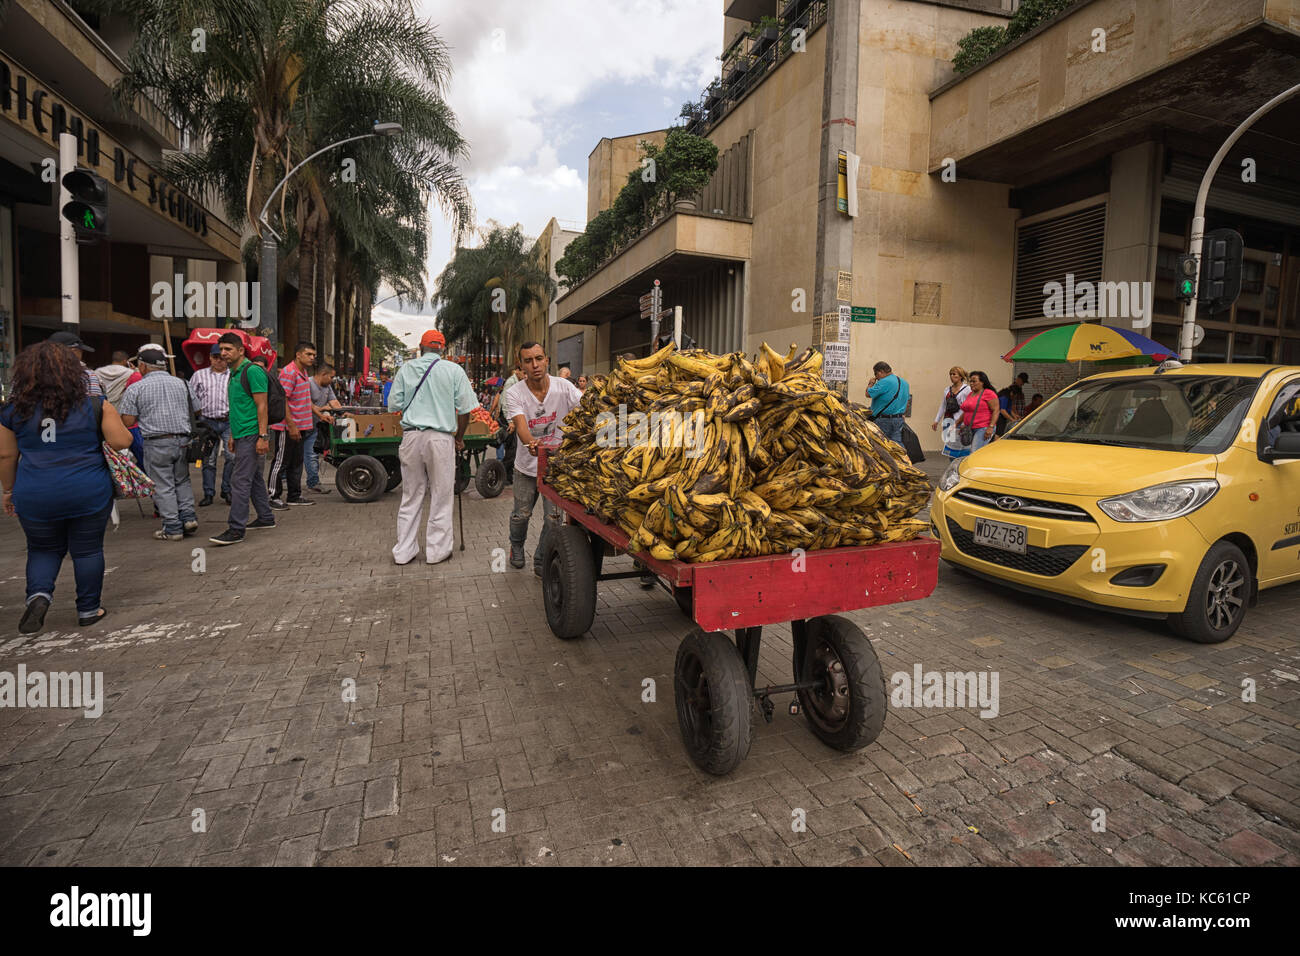 September 26, 2017 Medellin, Kolumbien: Ein mobiles Anbieter treibt einen Wagen voller Bananen im Zentrum der Stadt Stockfoto